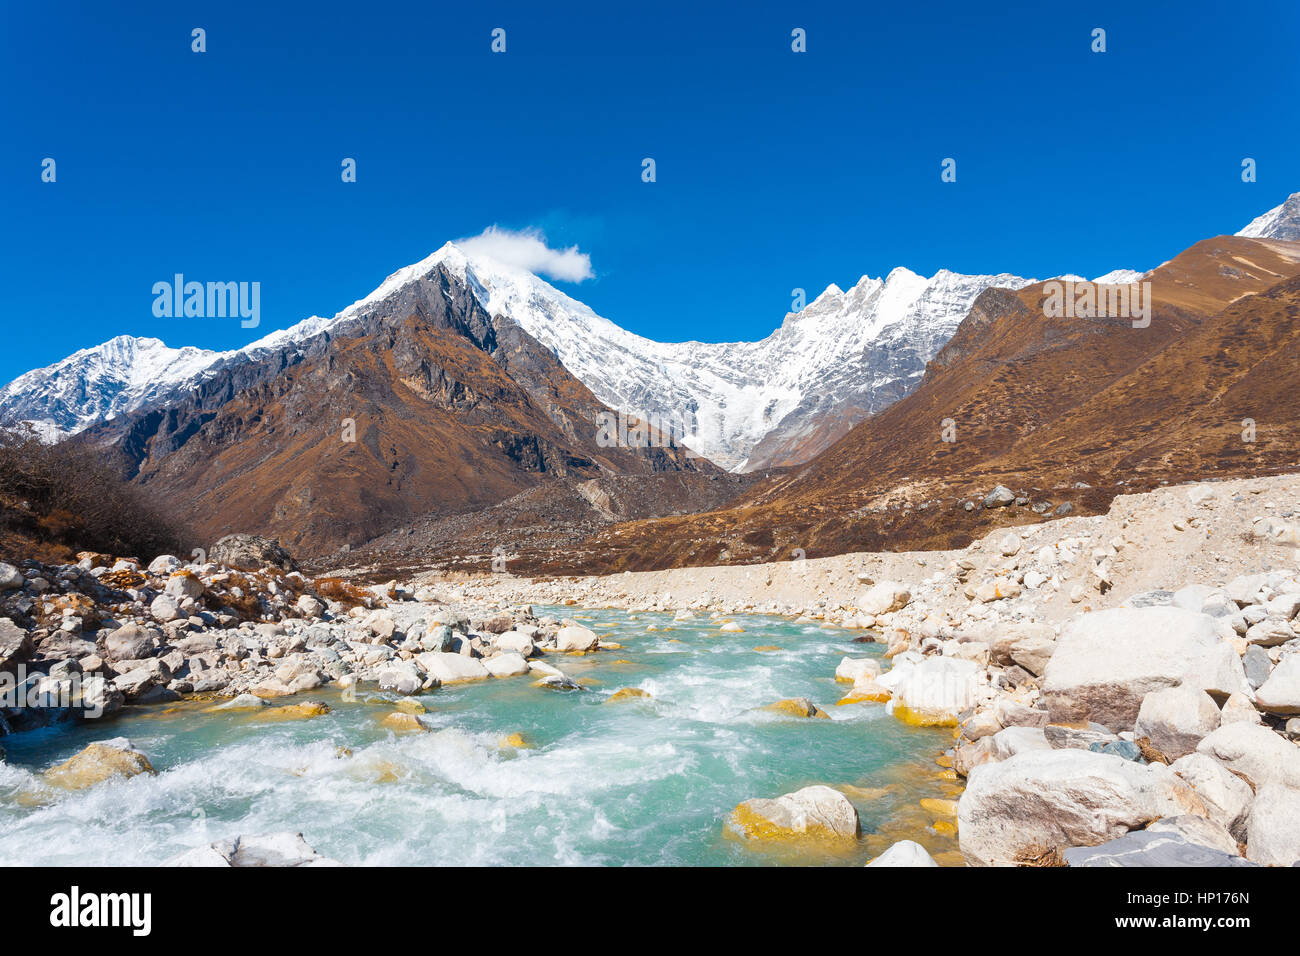 Vista del paesaggio di Langtang Lirung peak, parte di snow-capped Himalaya Mountain Range dietro a scorrimento veloce glaciale del fiume di acqua ad elevata altitudine in Nepal. Foto Stock